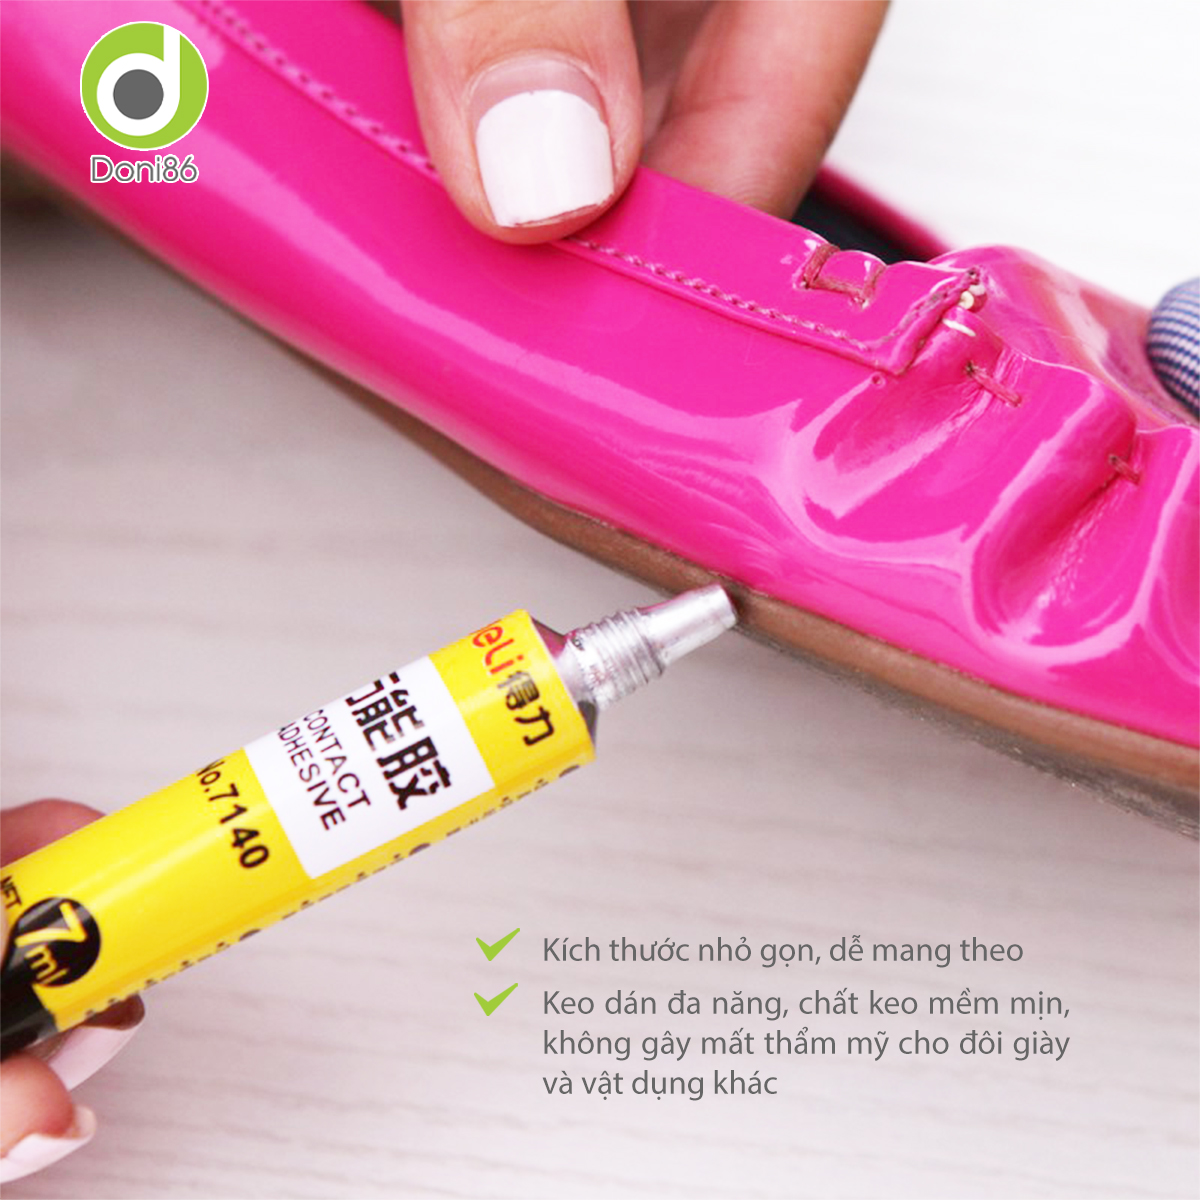 Combo 2 tuýp keo dán giày mùi hương dễ chịu, an toàn cho da tay, sức khỏe, chất keo bền chặt - Doni - DOPK355